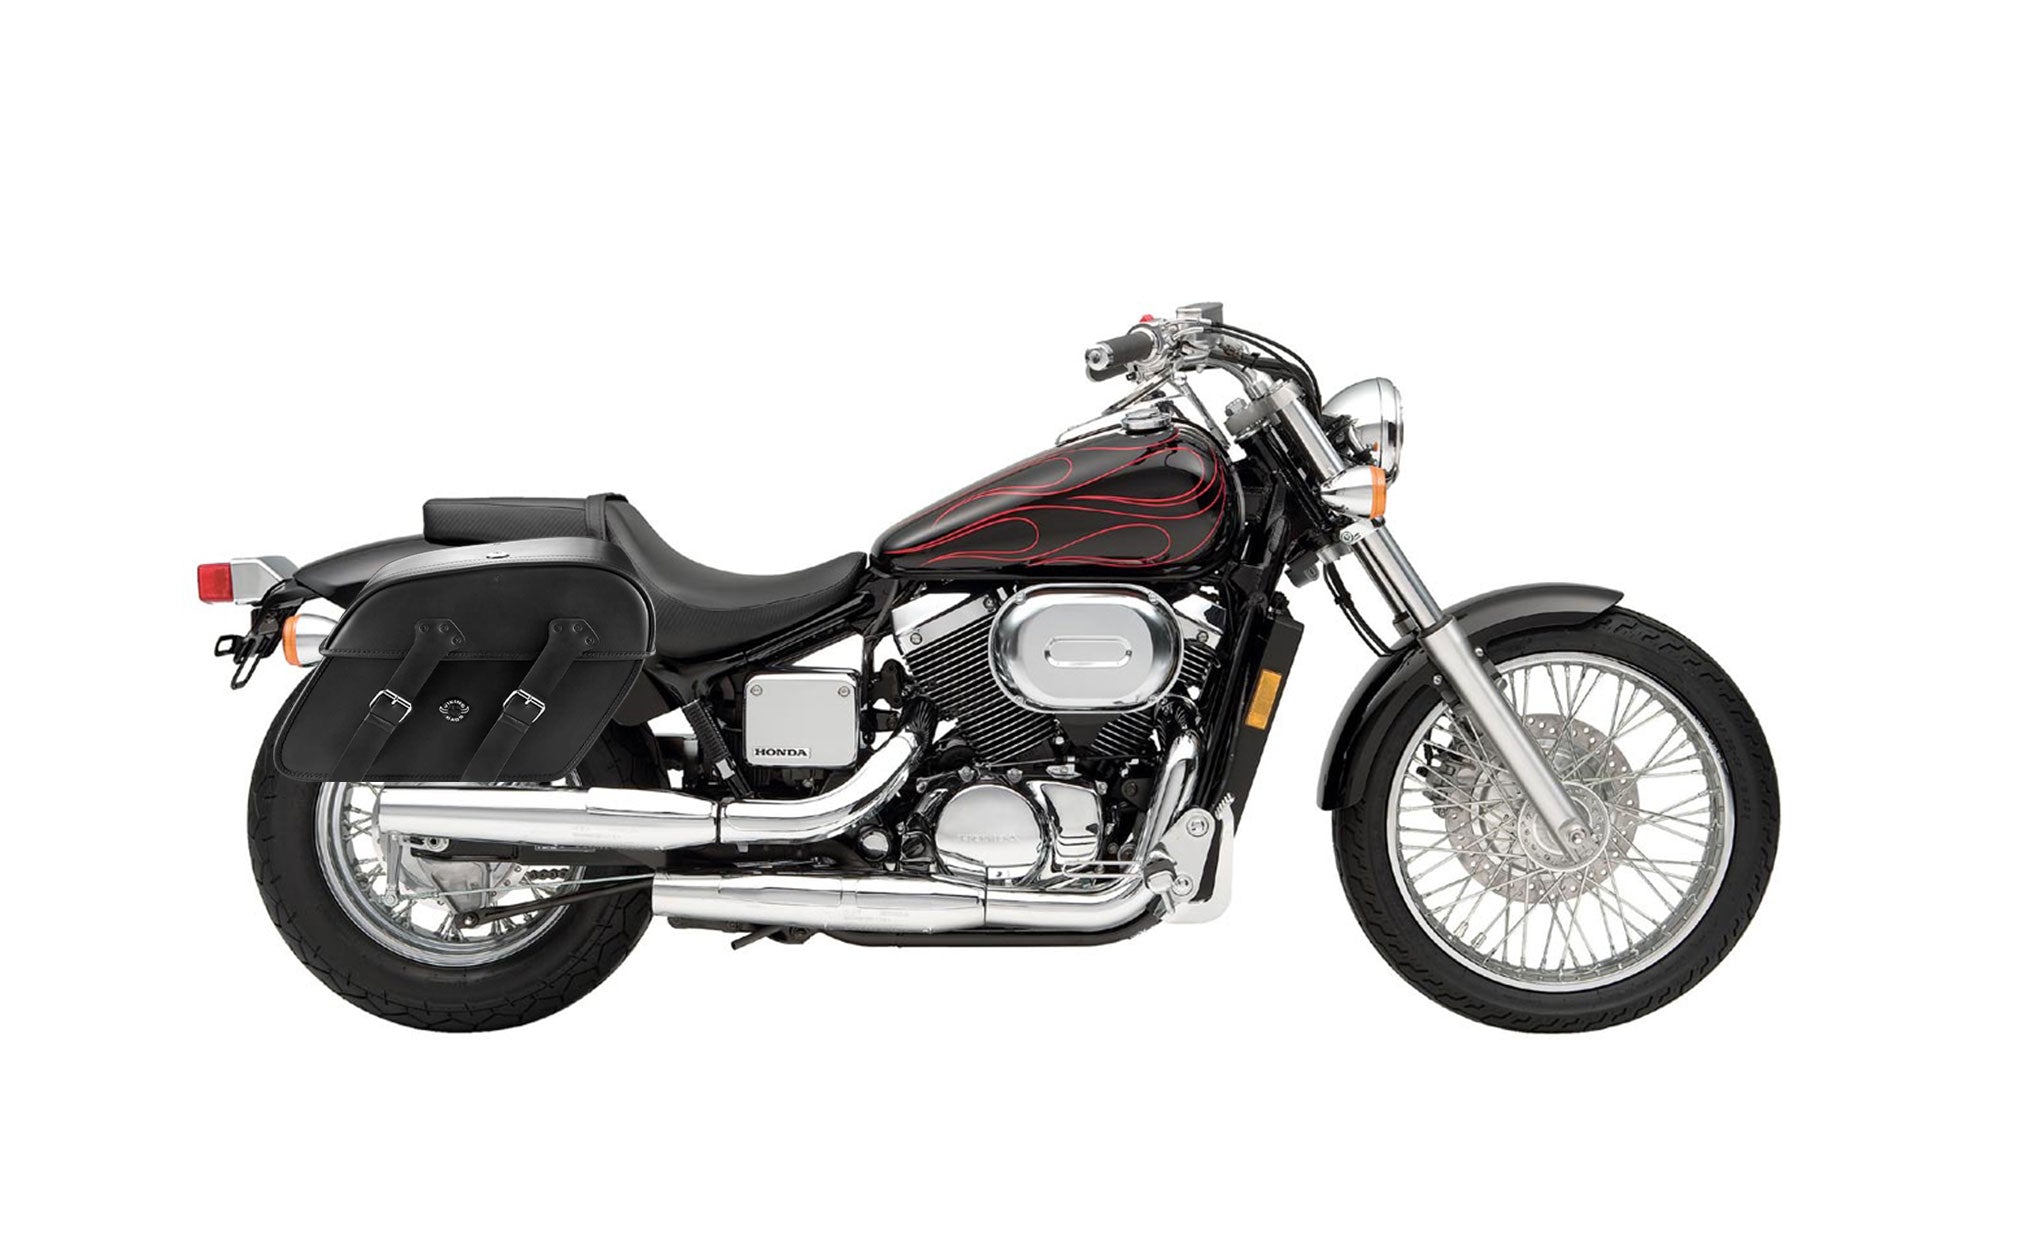 Viking Raven Extra Large Honda Shadow 750 Spirit Dc Shock Cut Out Leather Motorcycle Saddlebags on Bike Photo @expand